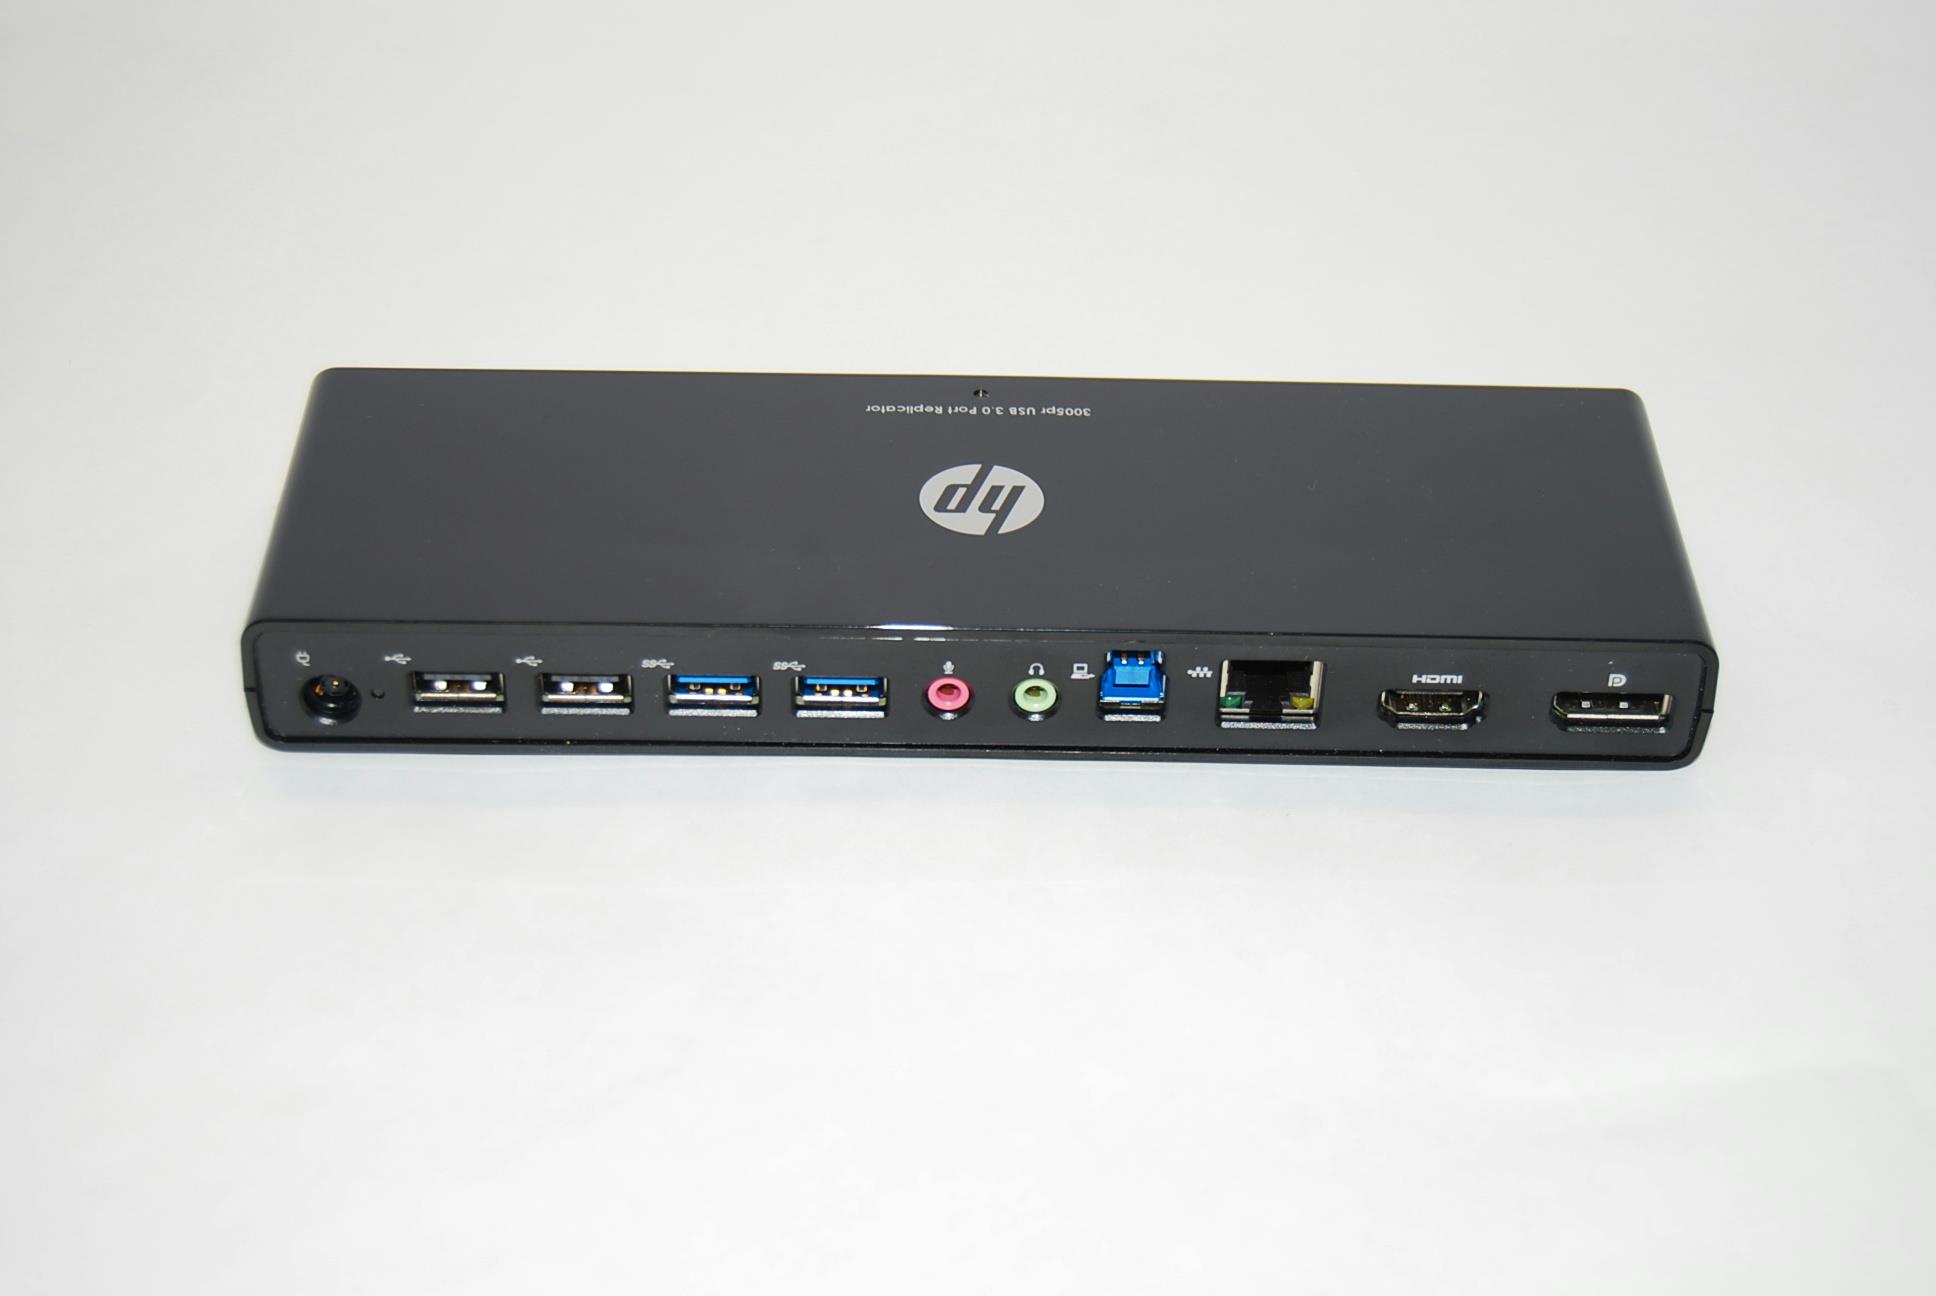 REPLICADOR DE PUERTOS USB MARCA HP (HP 3005pr USB 3.0 Port Replicator)